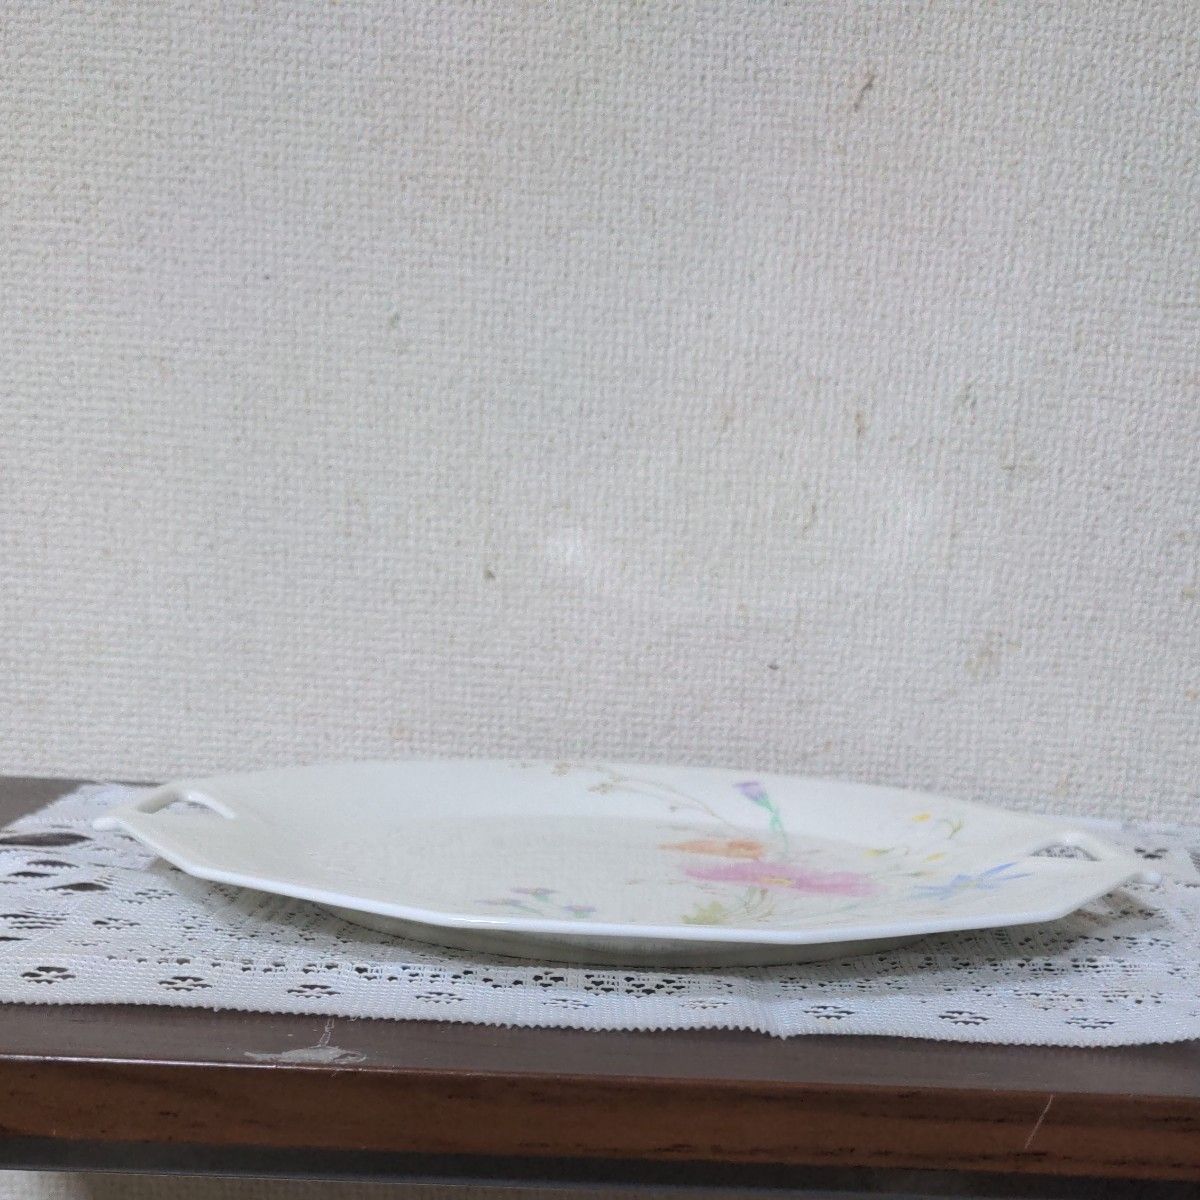 ナルミ製陶の大プレート1枚 左右 持ち手穴付き12角形パーティープレート花束絵柄のフルーツ皿  未使用品  美品